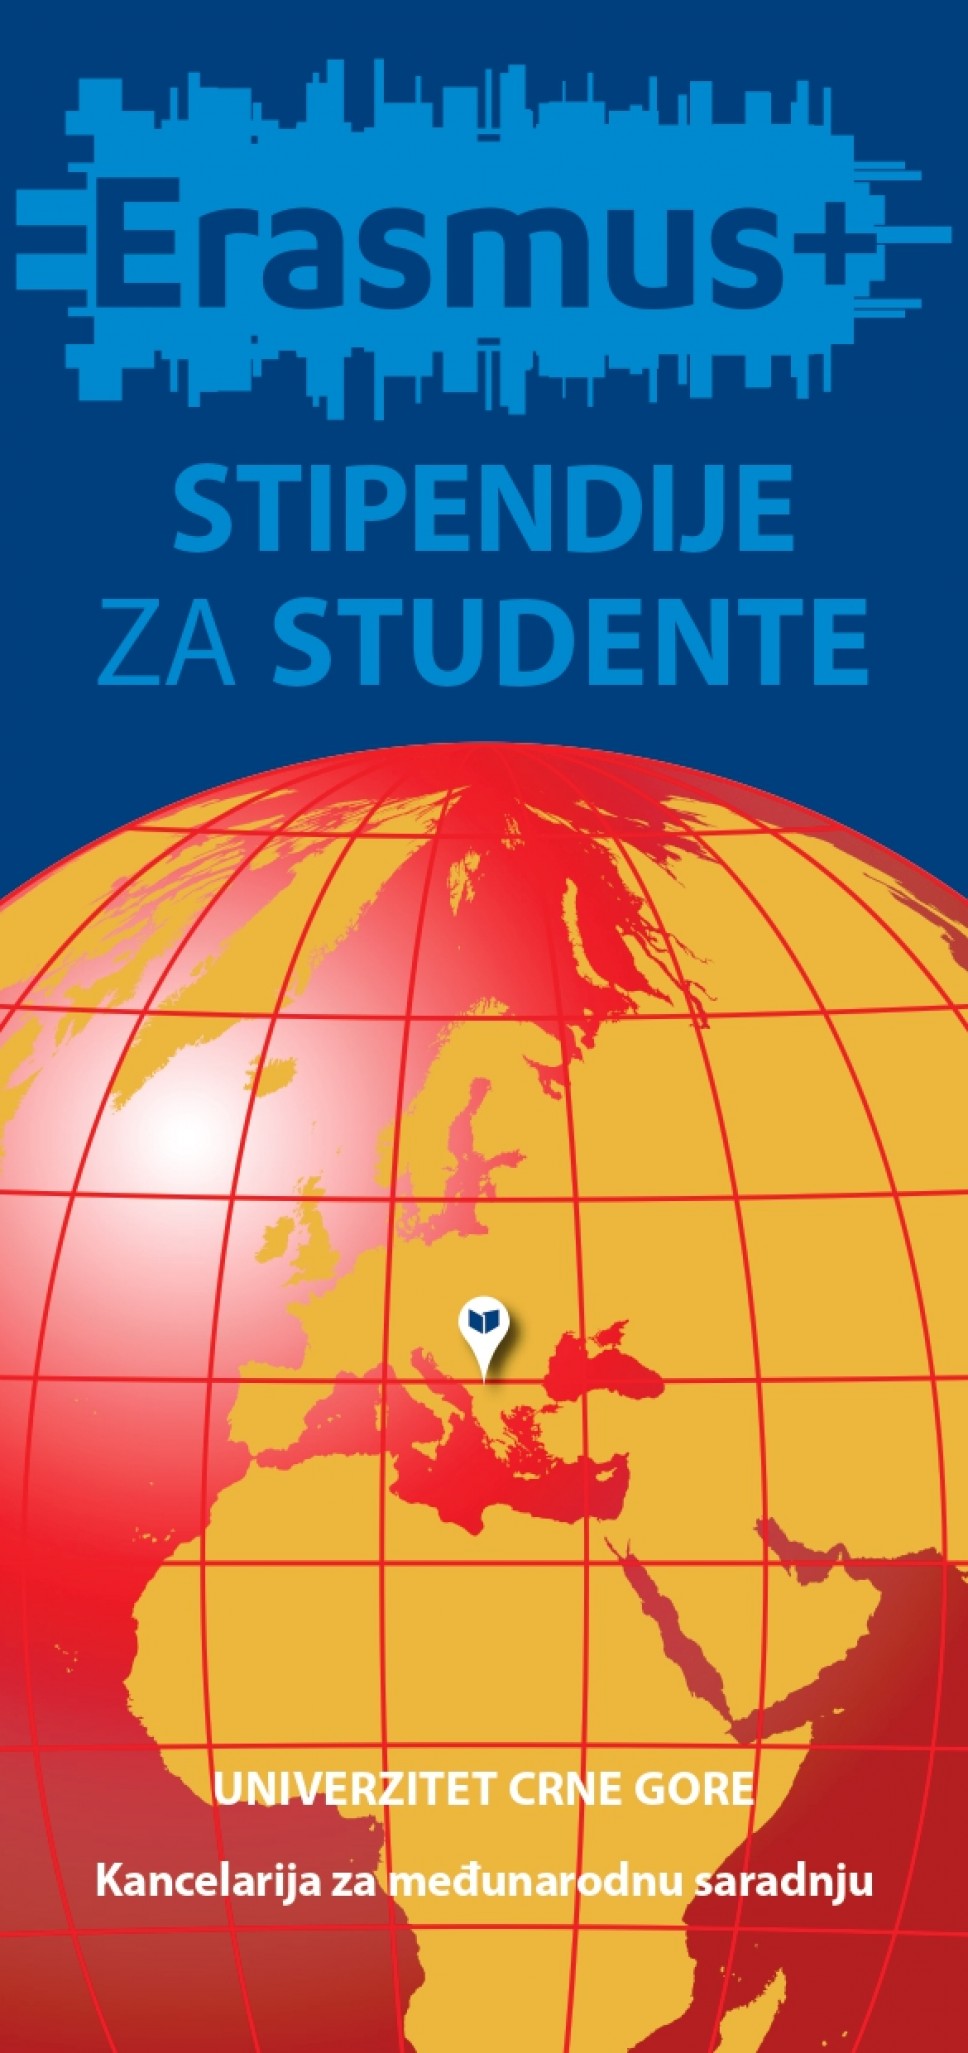 Erasmus+ stipendije za studente